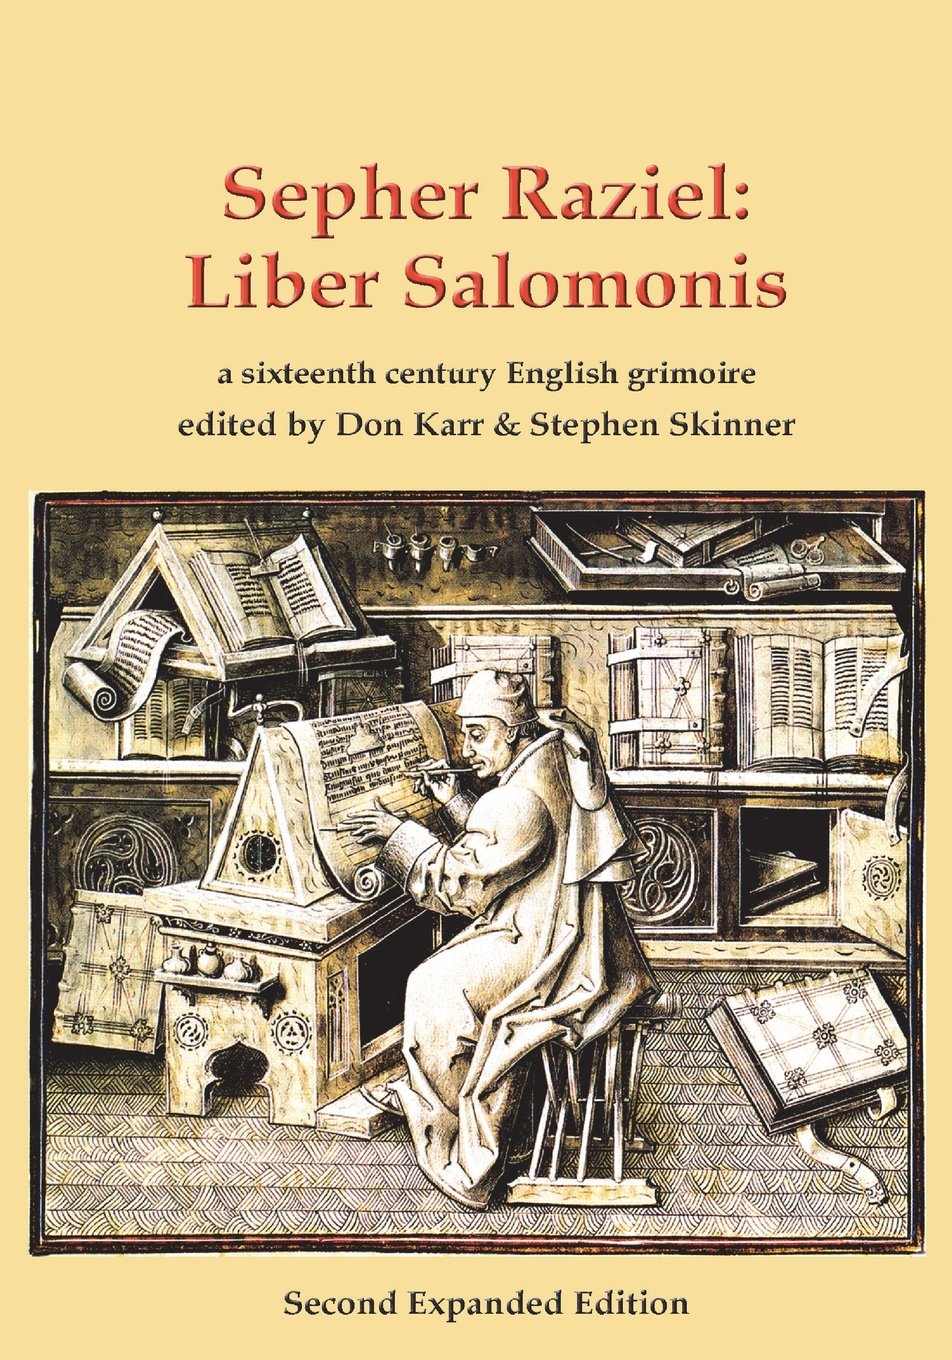 Sepher Raziel: Liber Salomonis. Edited by Don Karr & Stephen Skinner